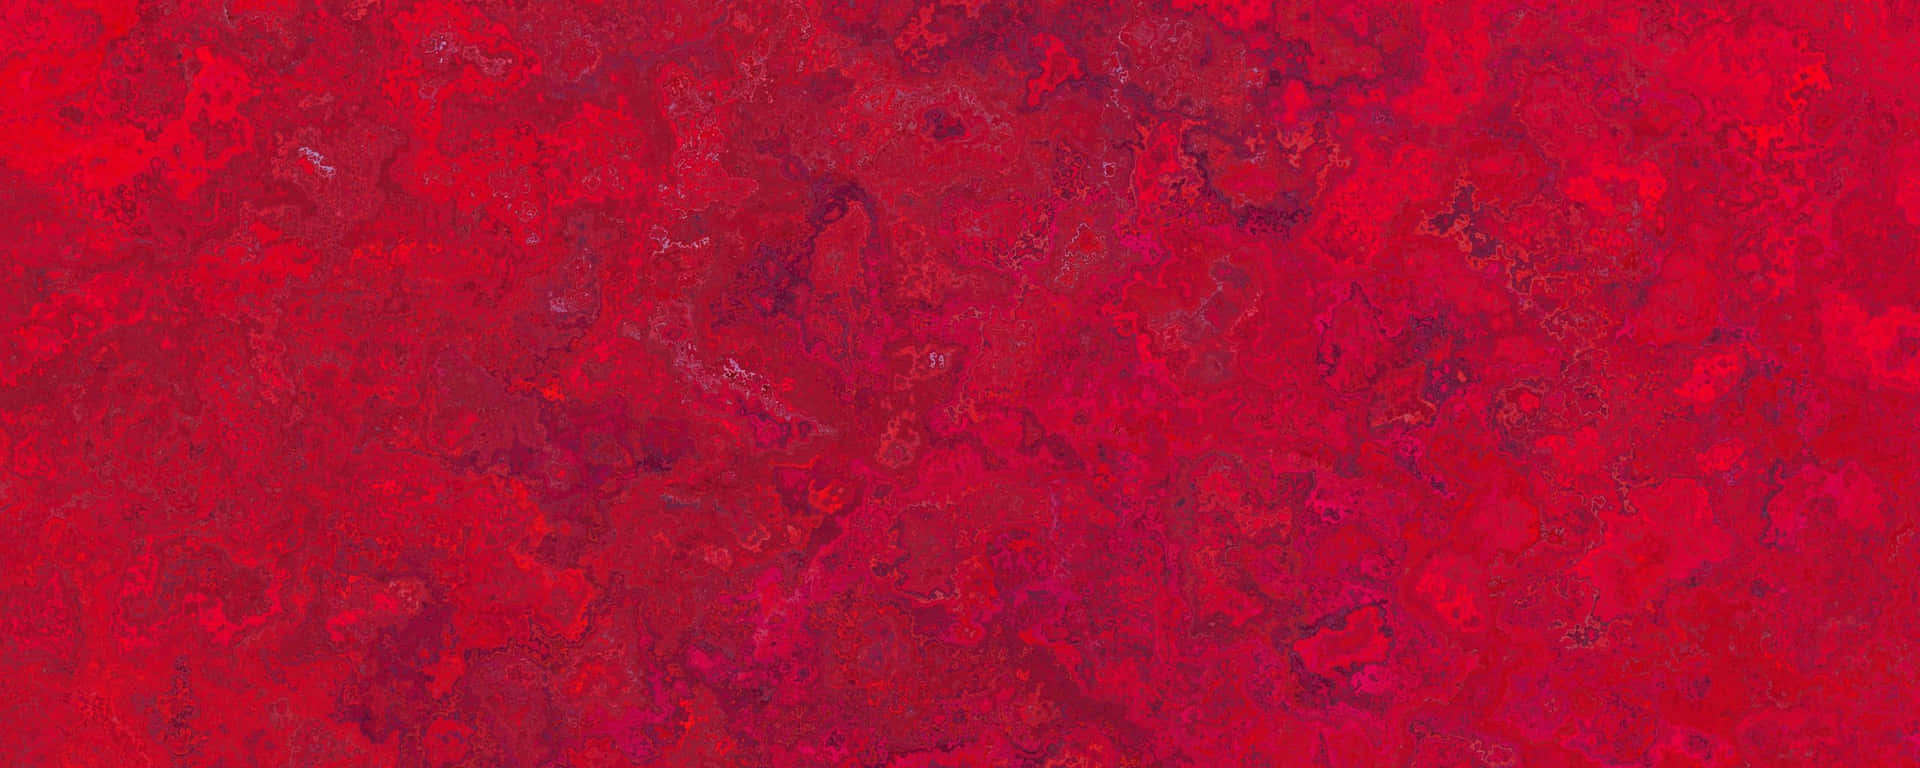 Mosaicoabstracto En Mosaico Rojo Ultra Wide Hd Fondo de pantalla